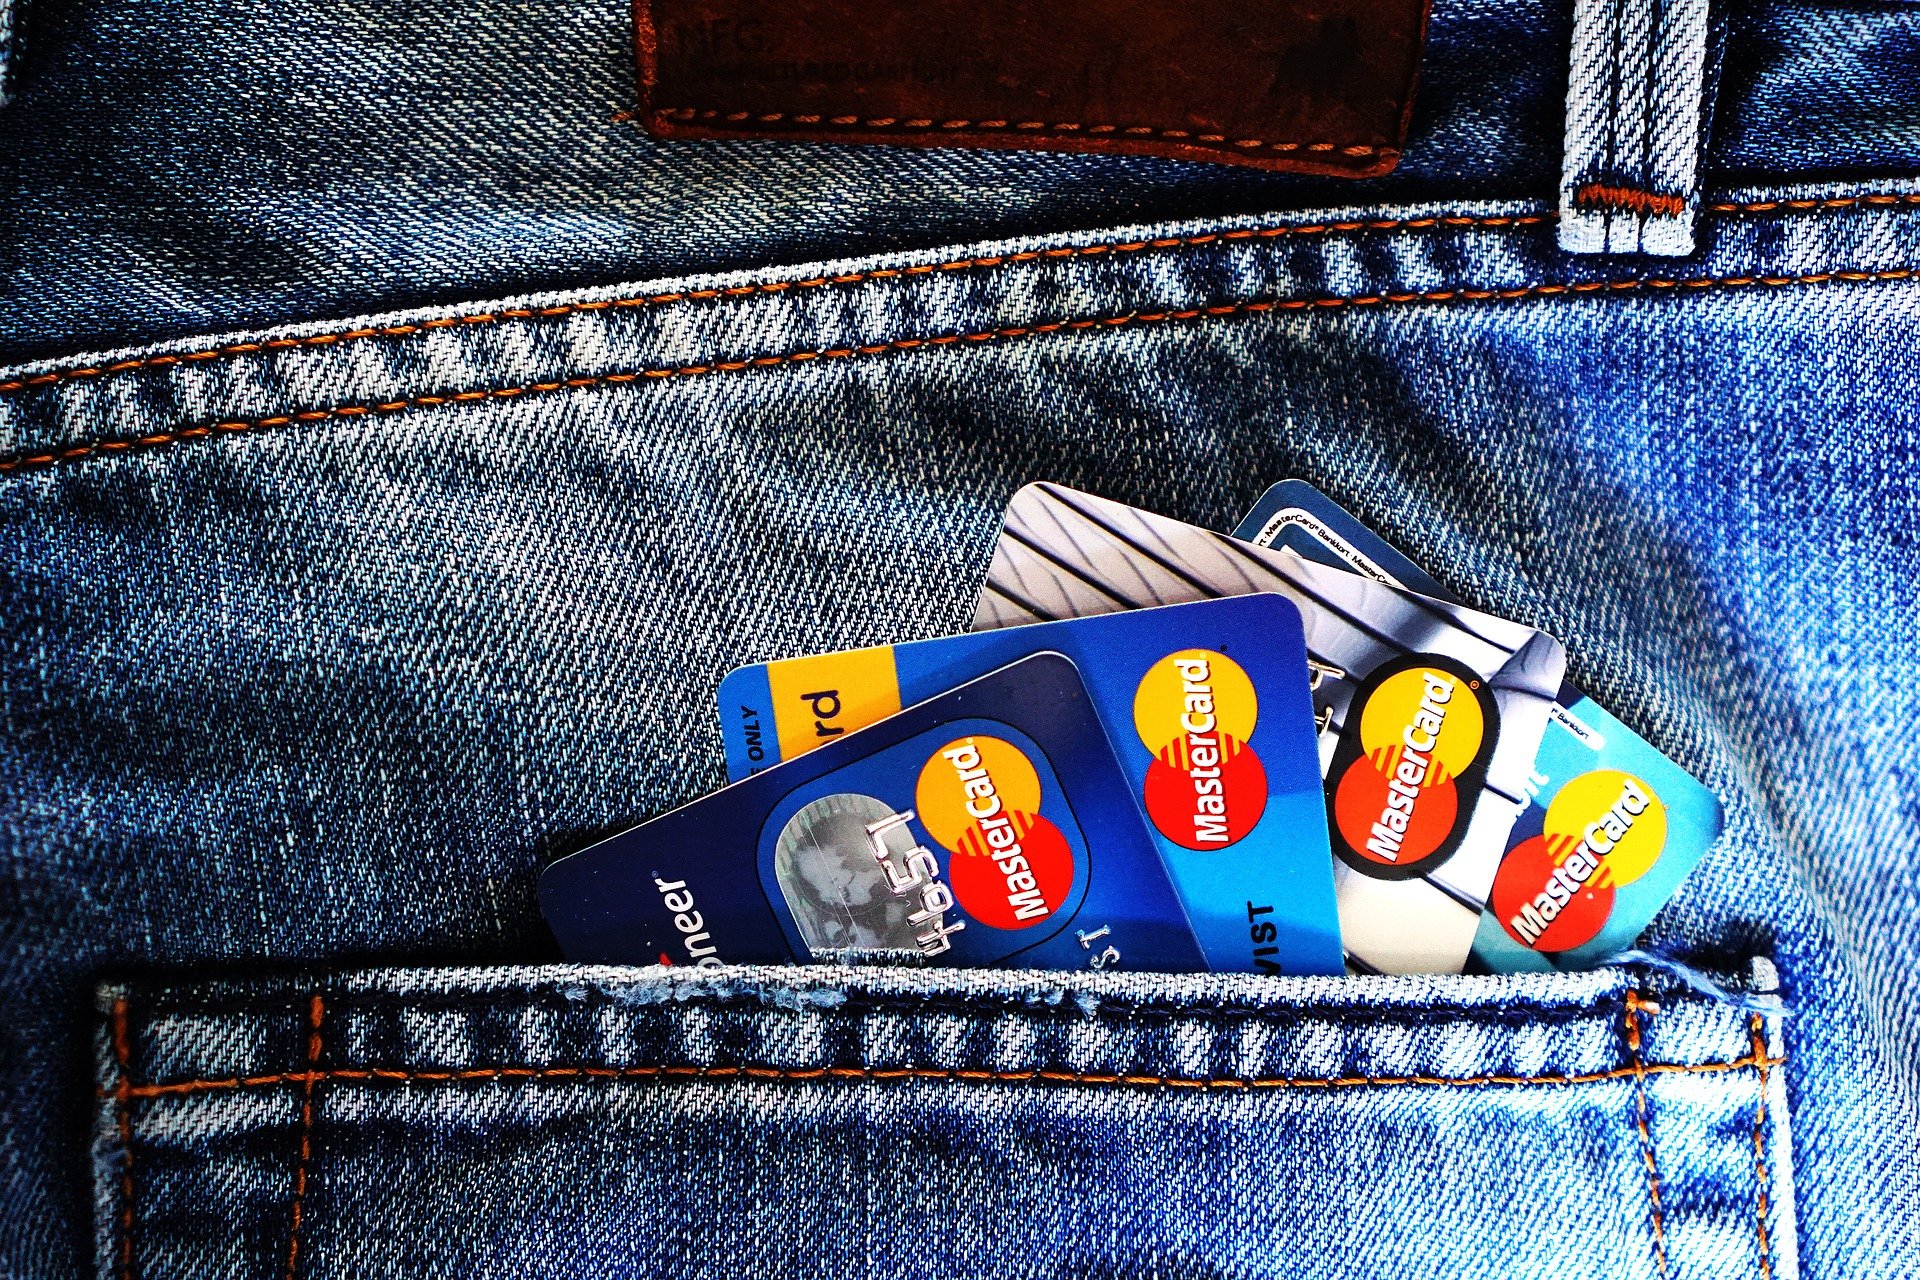 Historia y evolución de las tarjetas de crédito: Una perspectiva económica